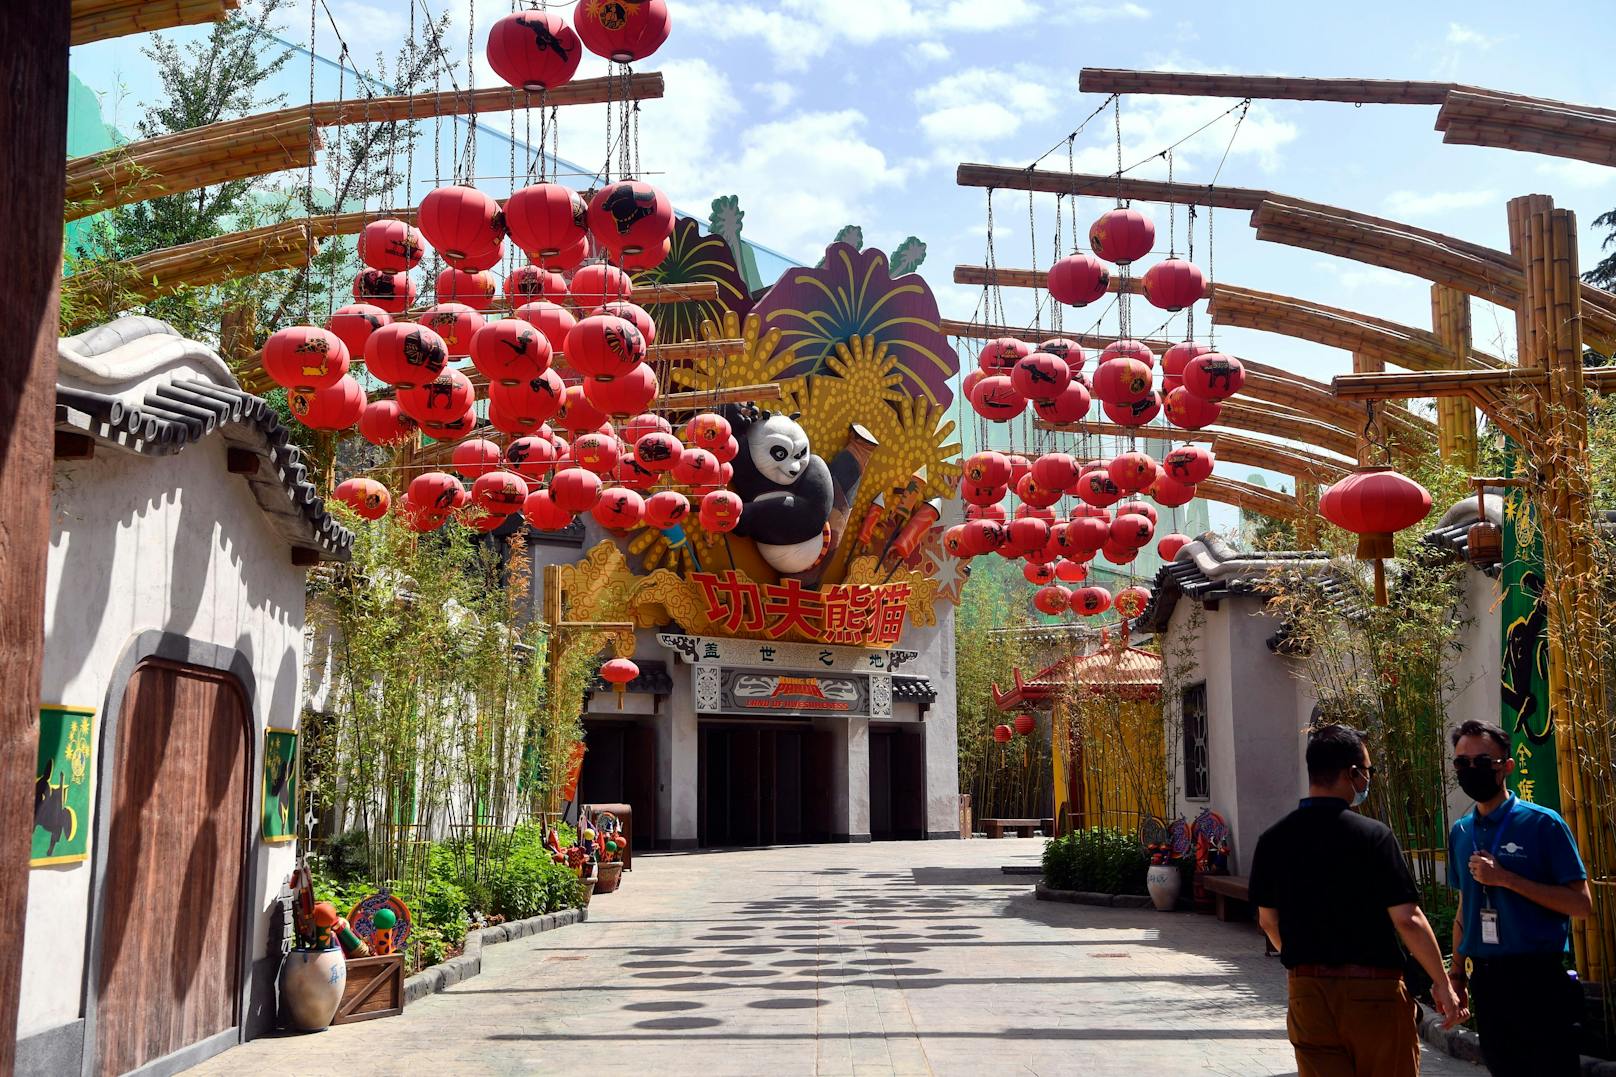 Mit dem "Universal Beijing Resort" hat jetzt der weltweit größte Vergnügungspark von Universal Studios eröffnet.